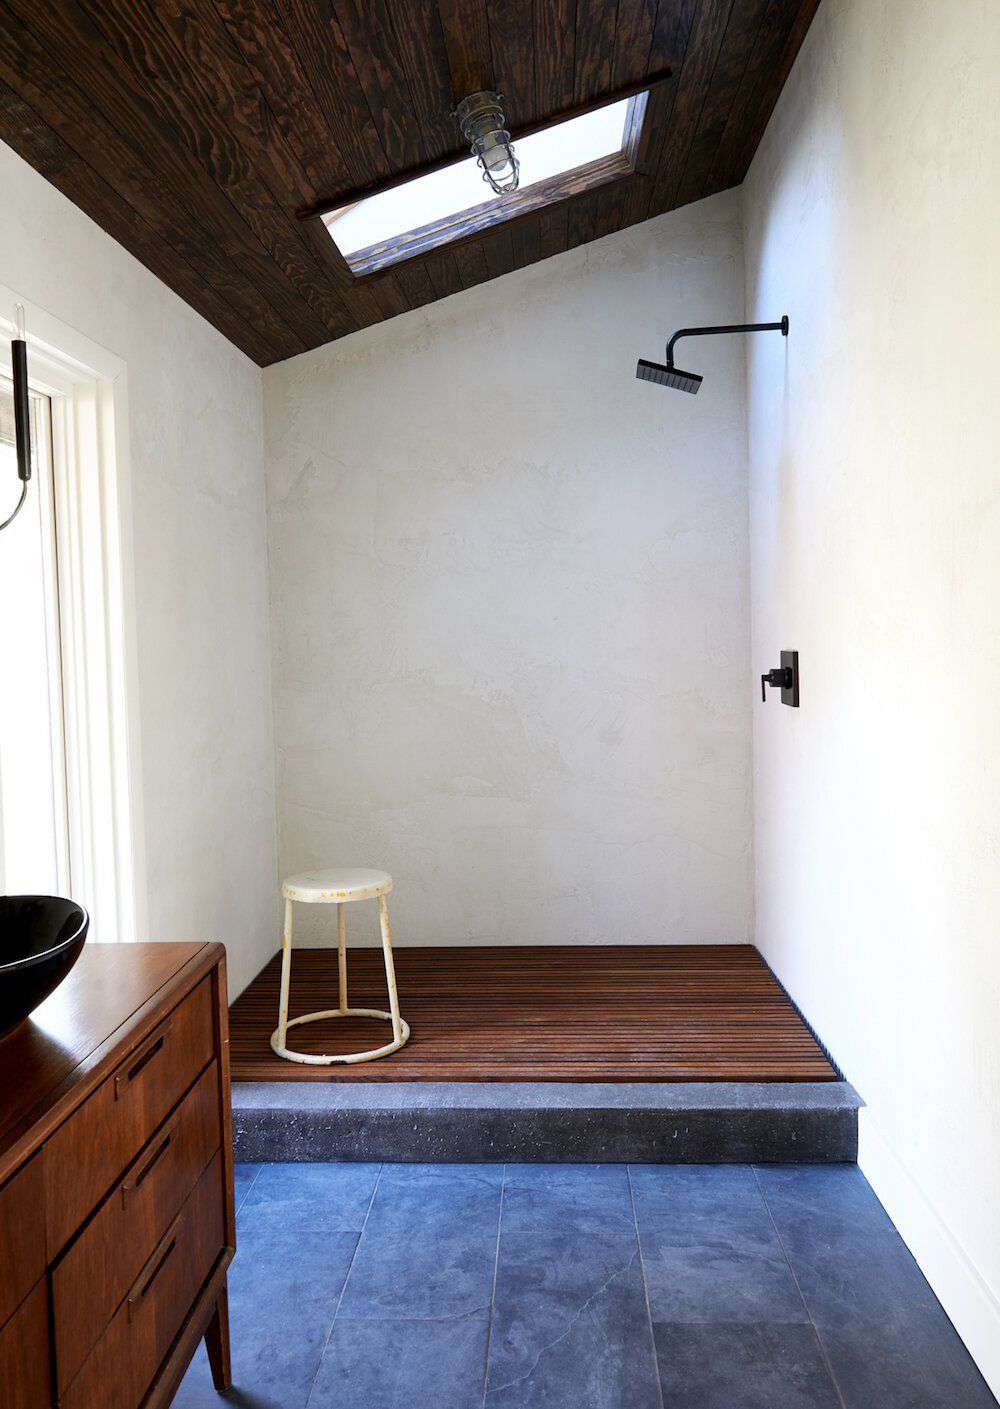 midcentury modern bathroom floor tile ideas